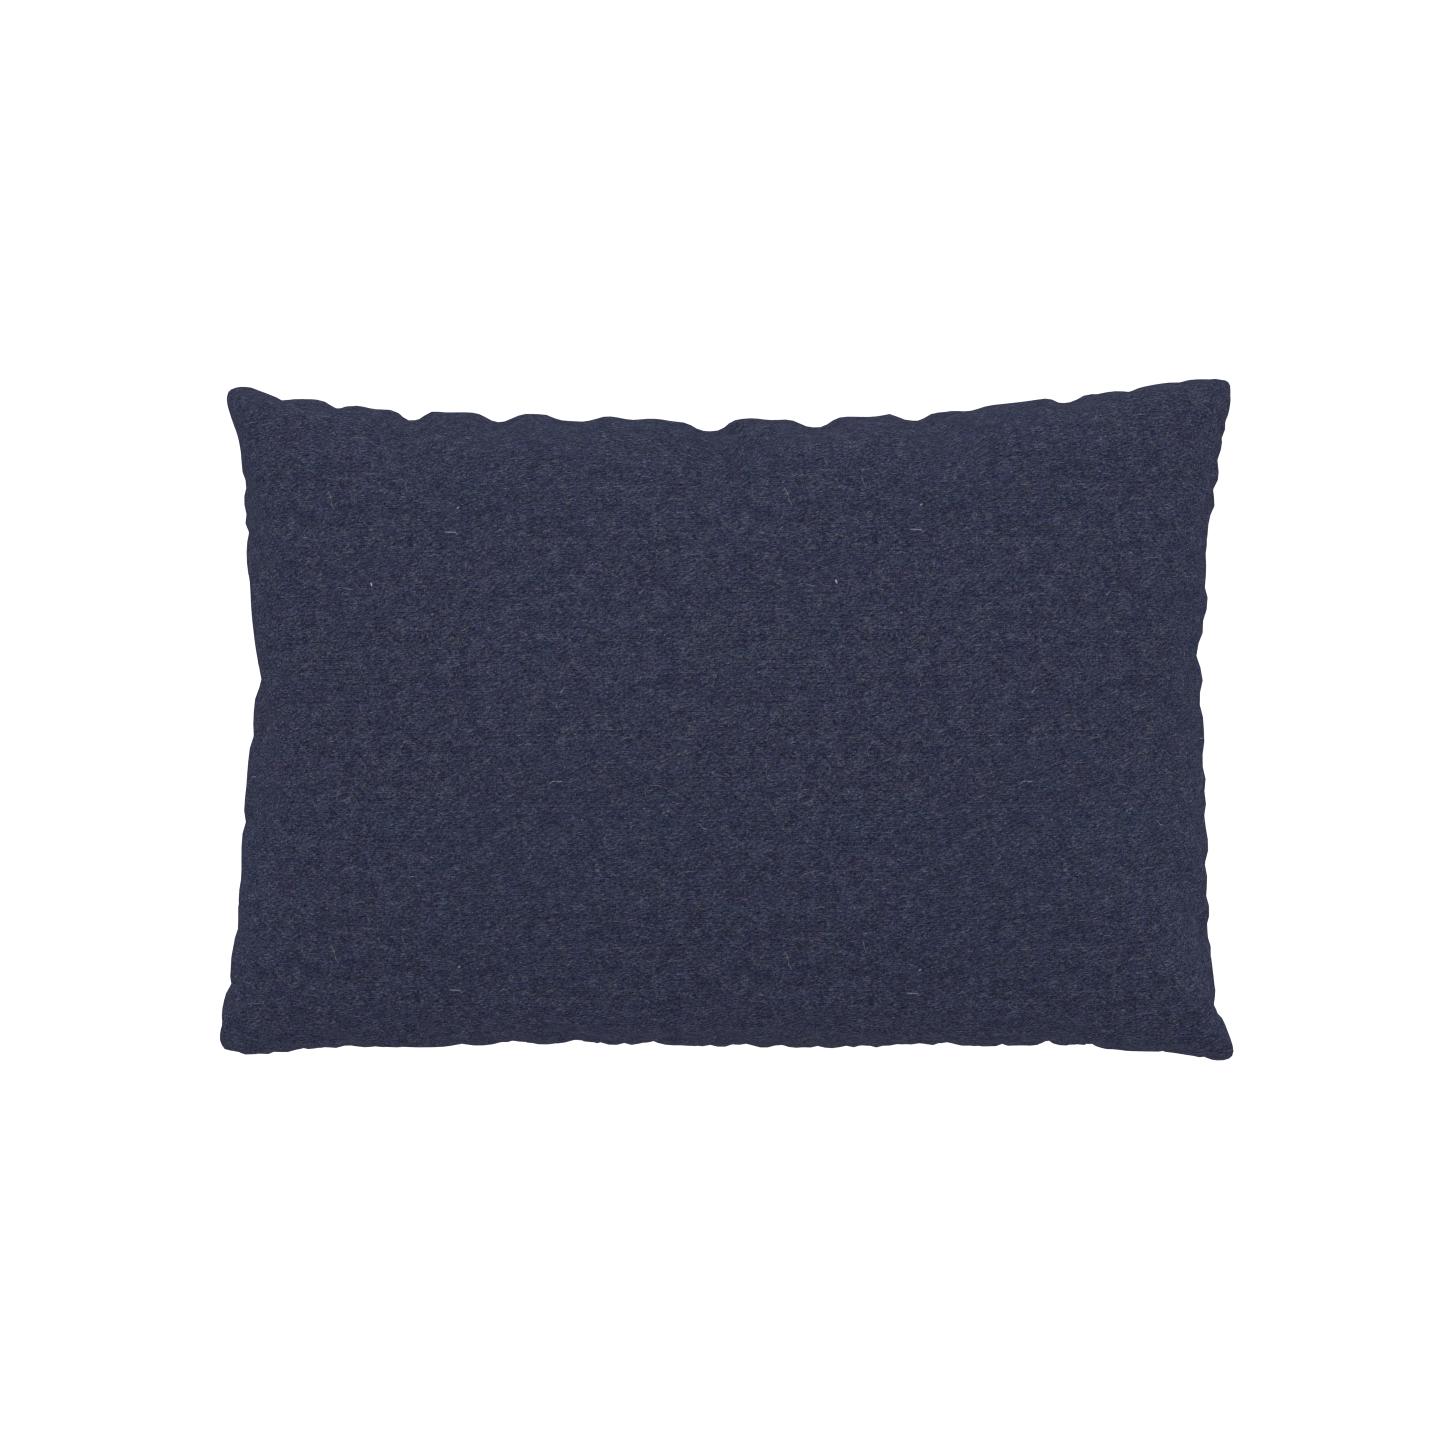 MYCS Coussin Bleu Denim - 40x60 cm - Housse en Laine. Coussin de canapé moelleux